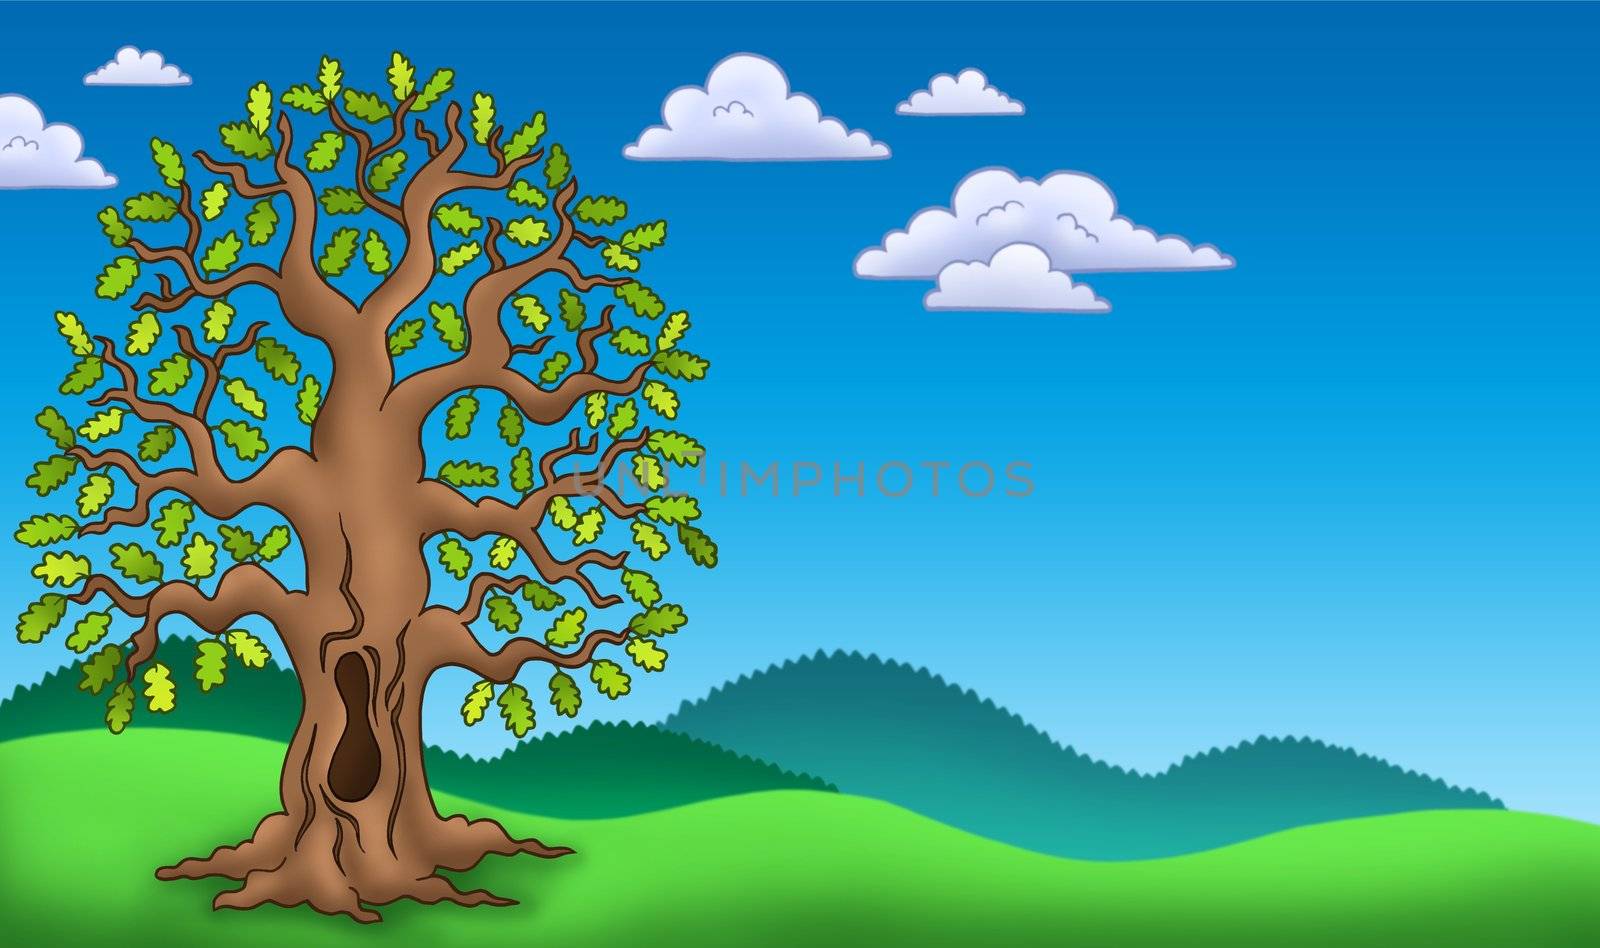 Landscape with oak tree - color illustration.